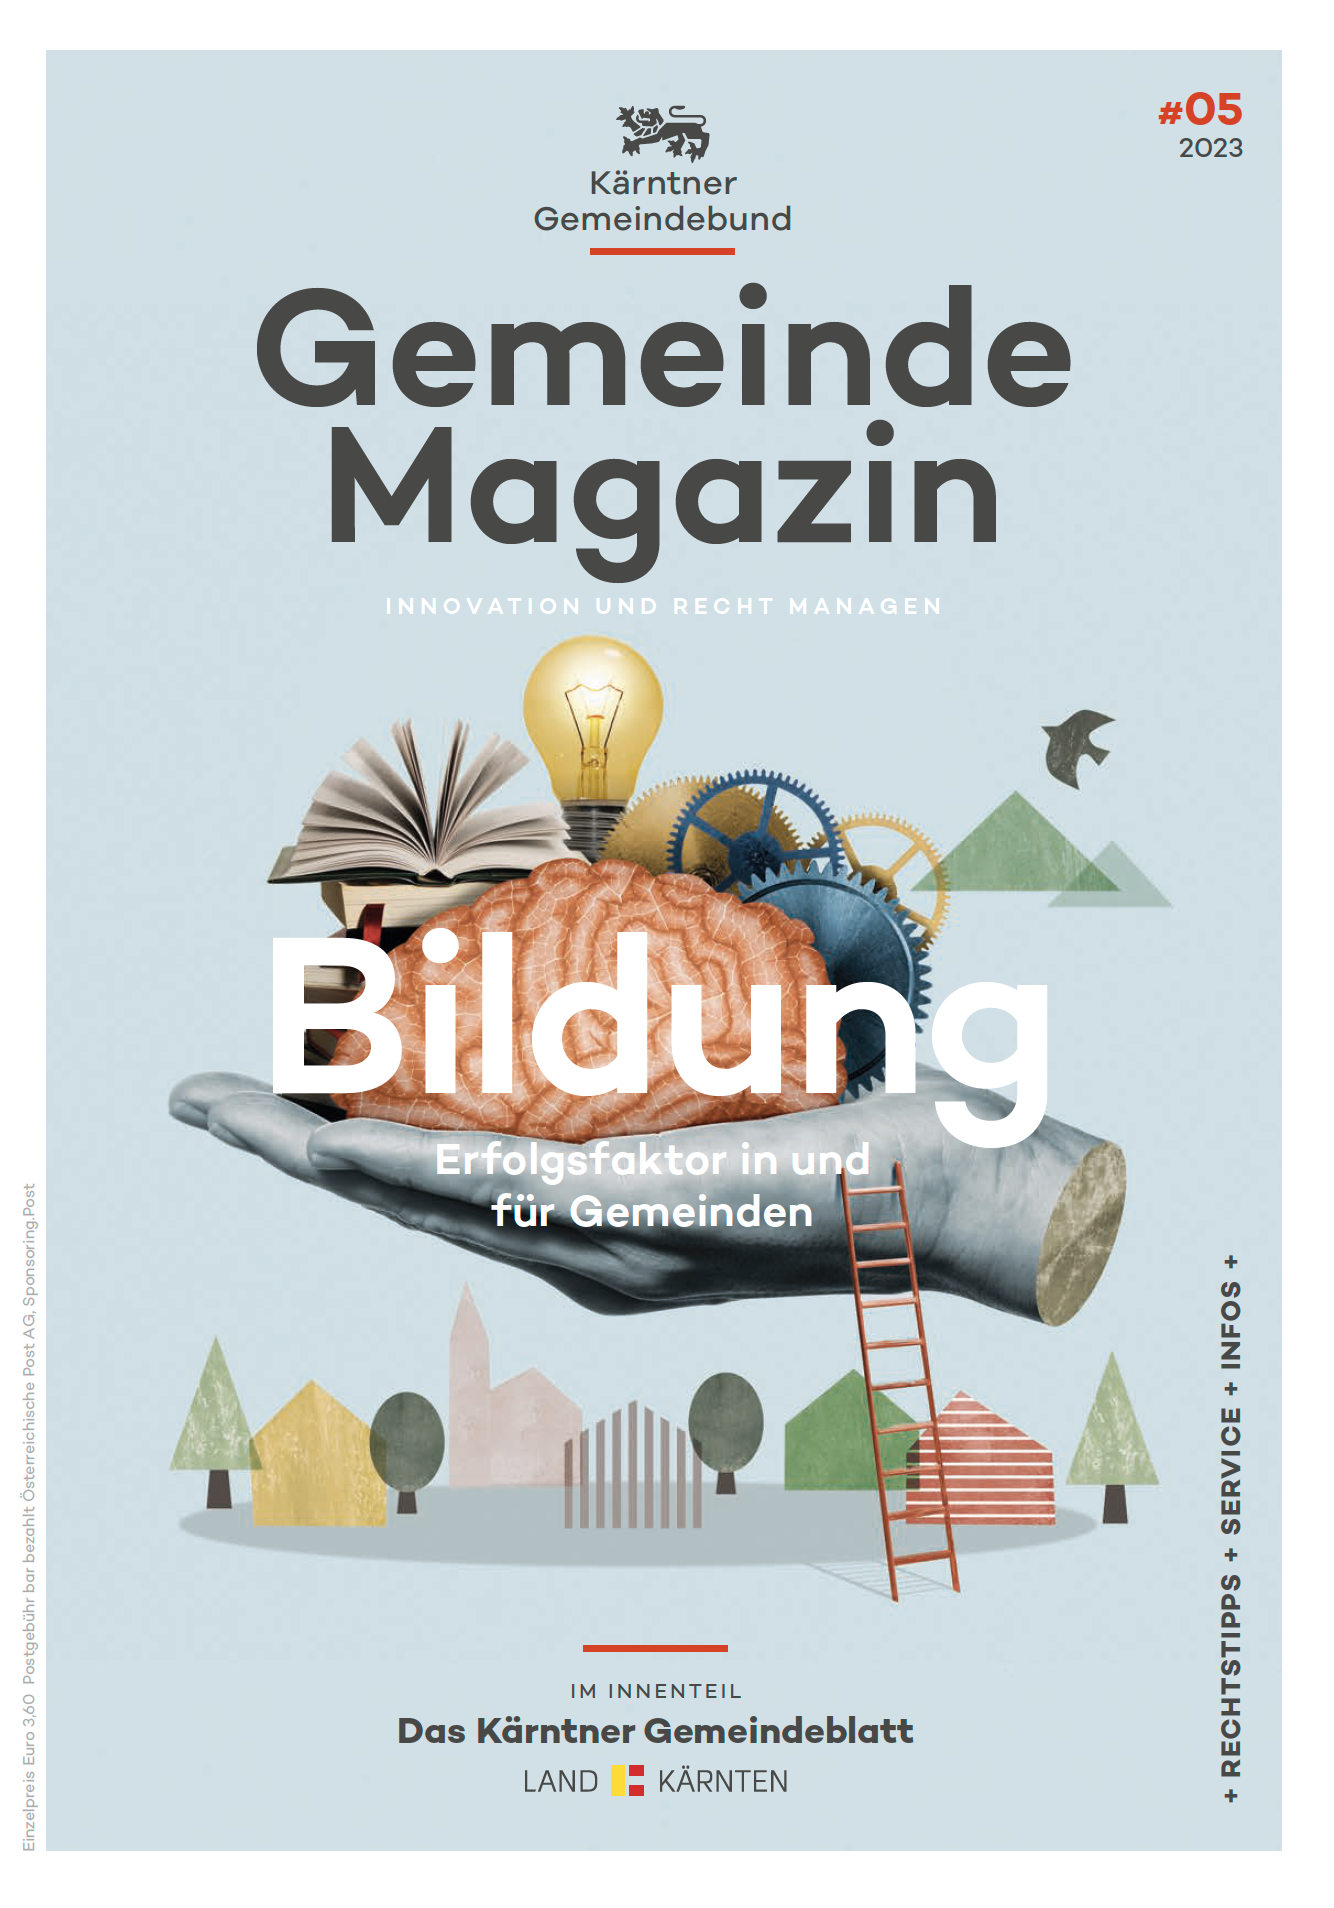 Kärntner Gemeindebund Gemeindemagazin Ausgabe 051 von 2023 zum Thema Bildung